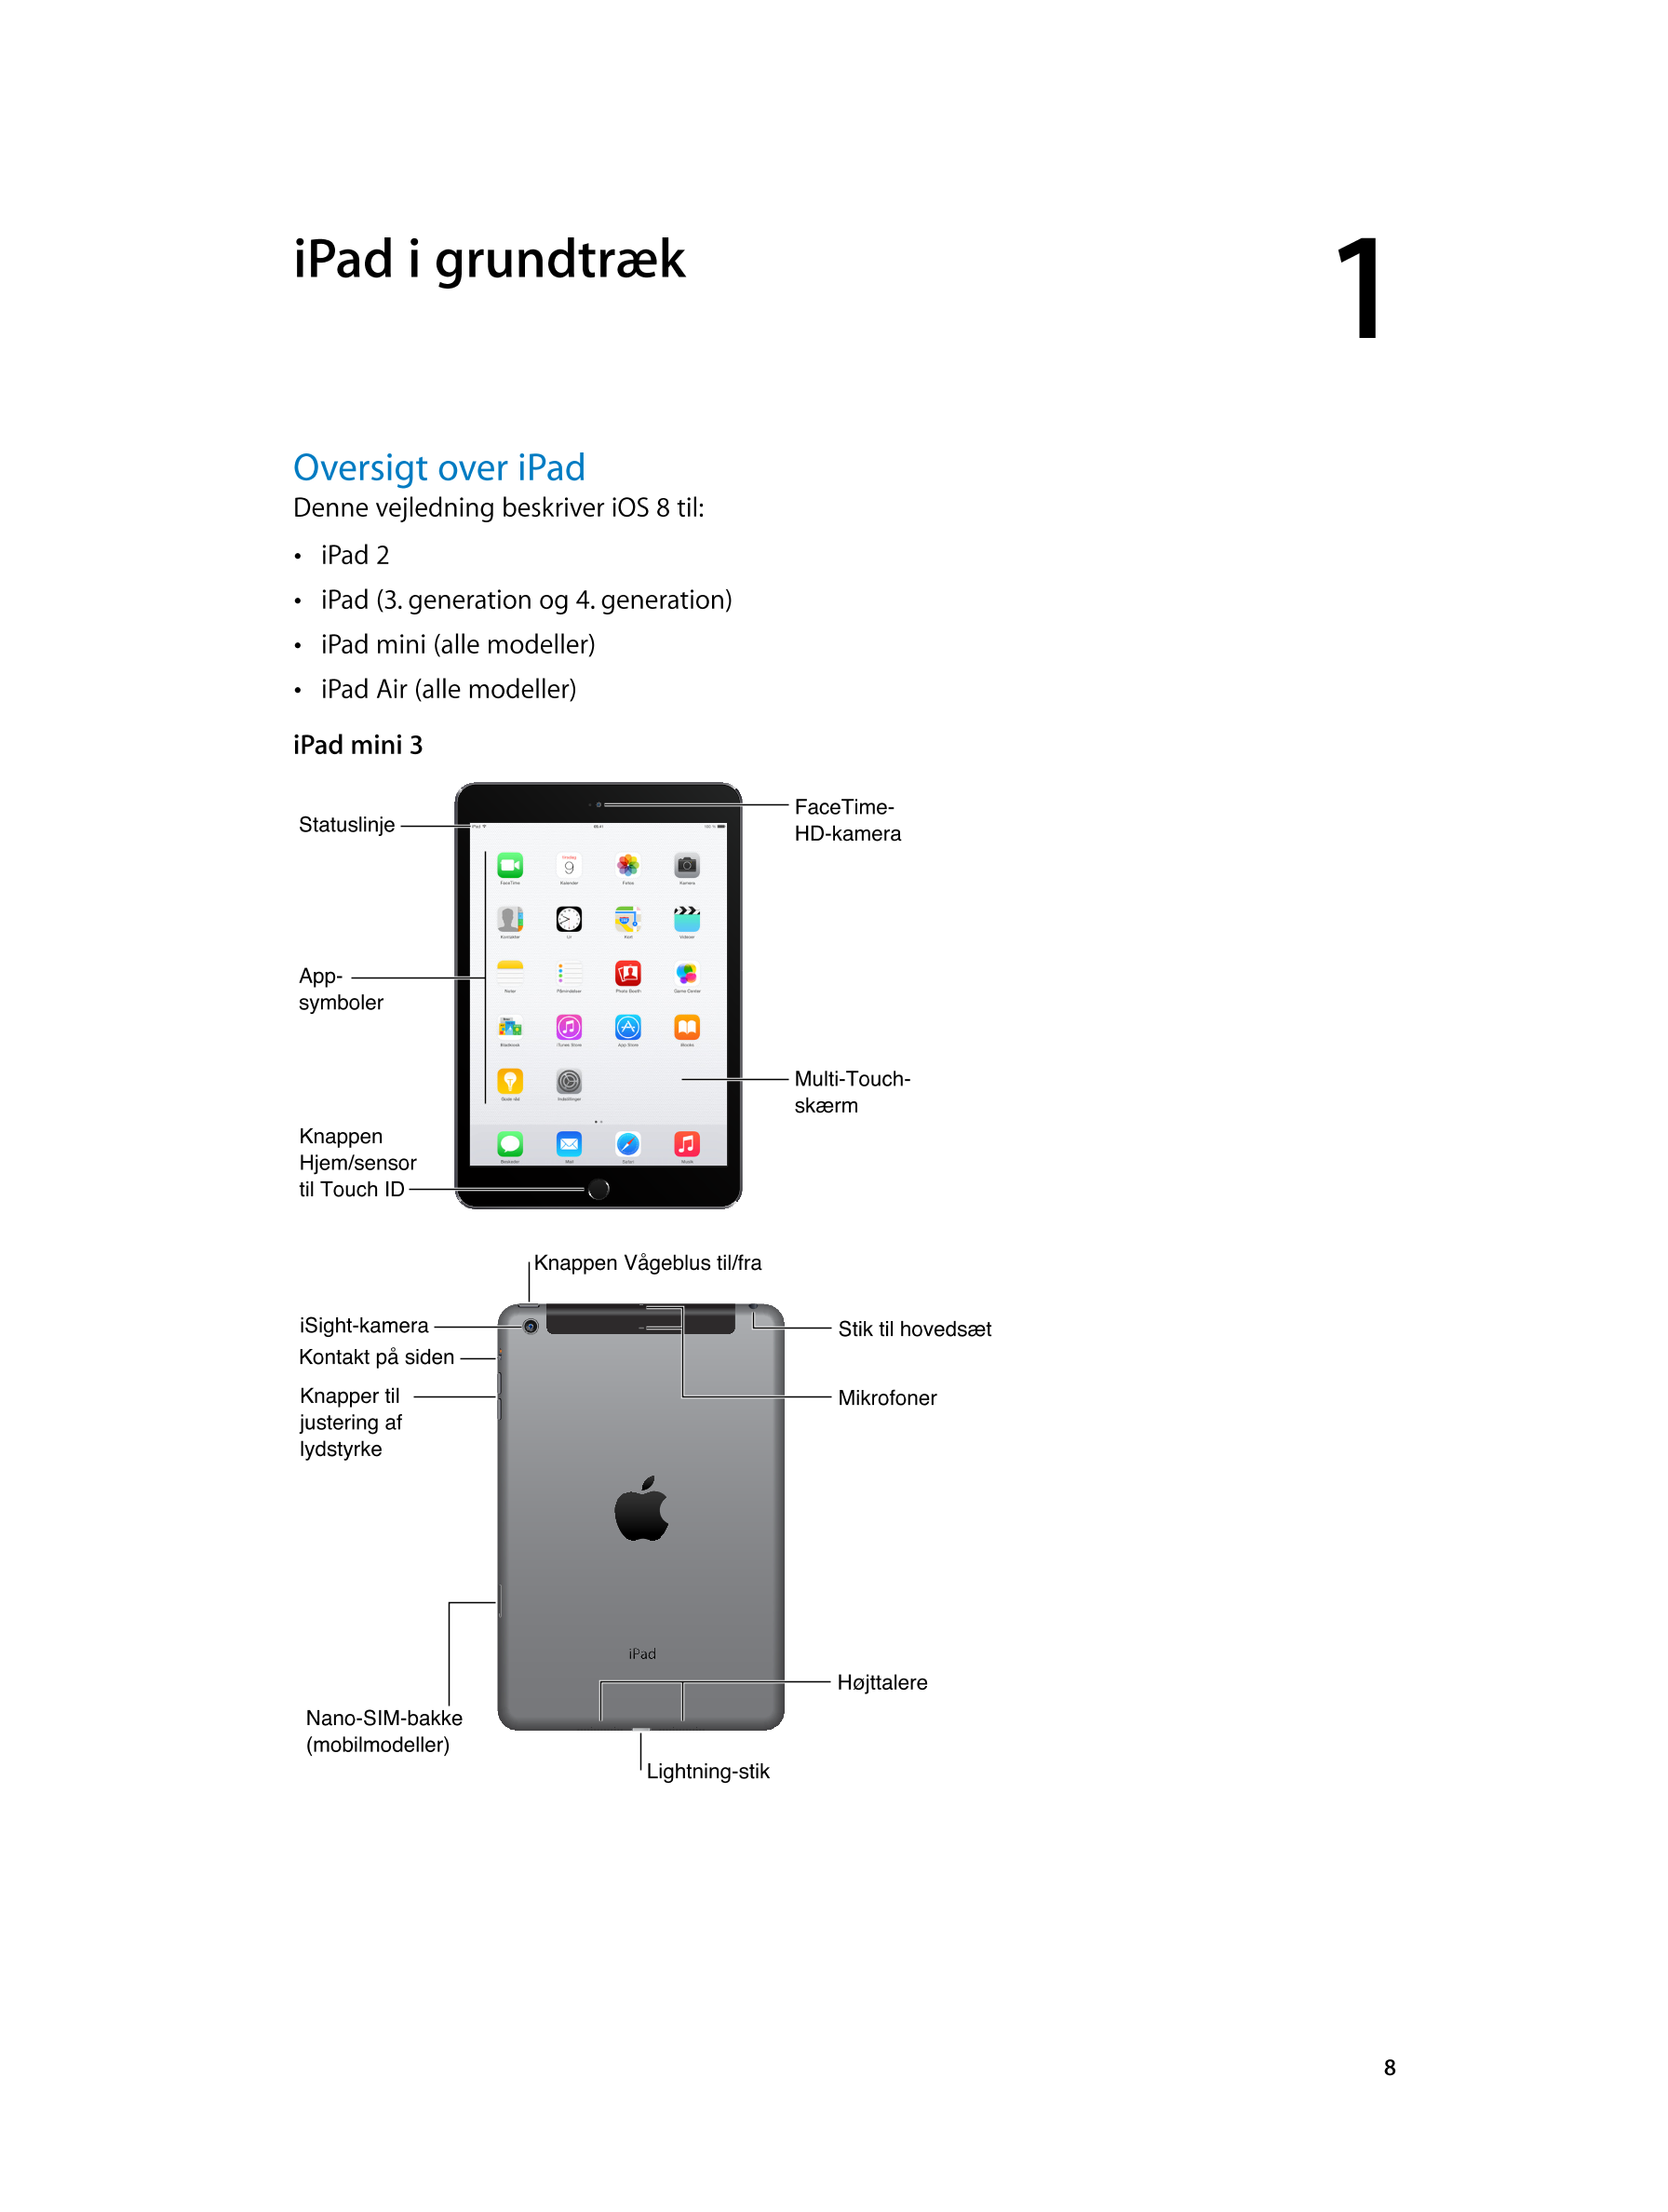   iPad i grundtræk 1         
Oversigt over iPad
Denne vejledning beskriver iOS  8 til: 
•  iPad  2
•  iPad (3. generation og 4.